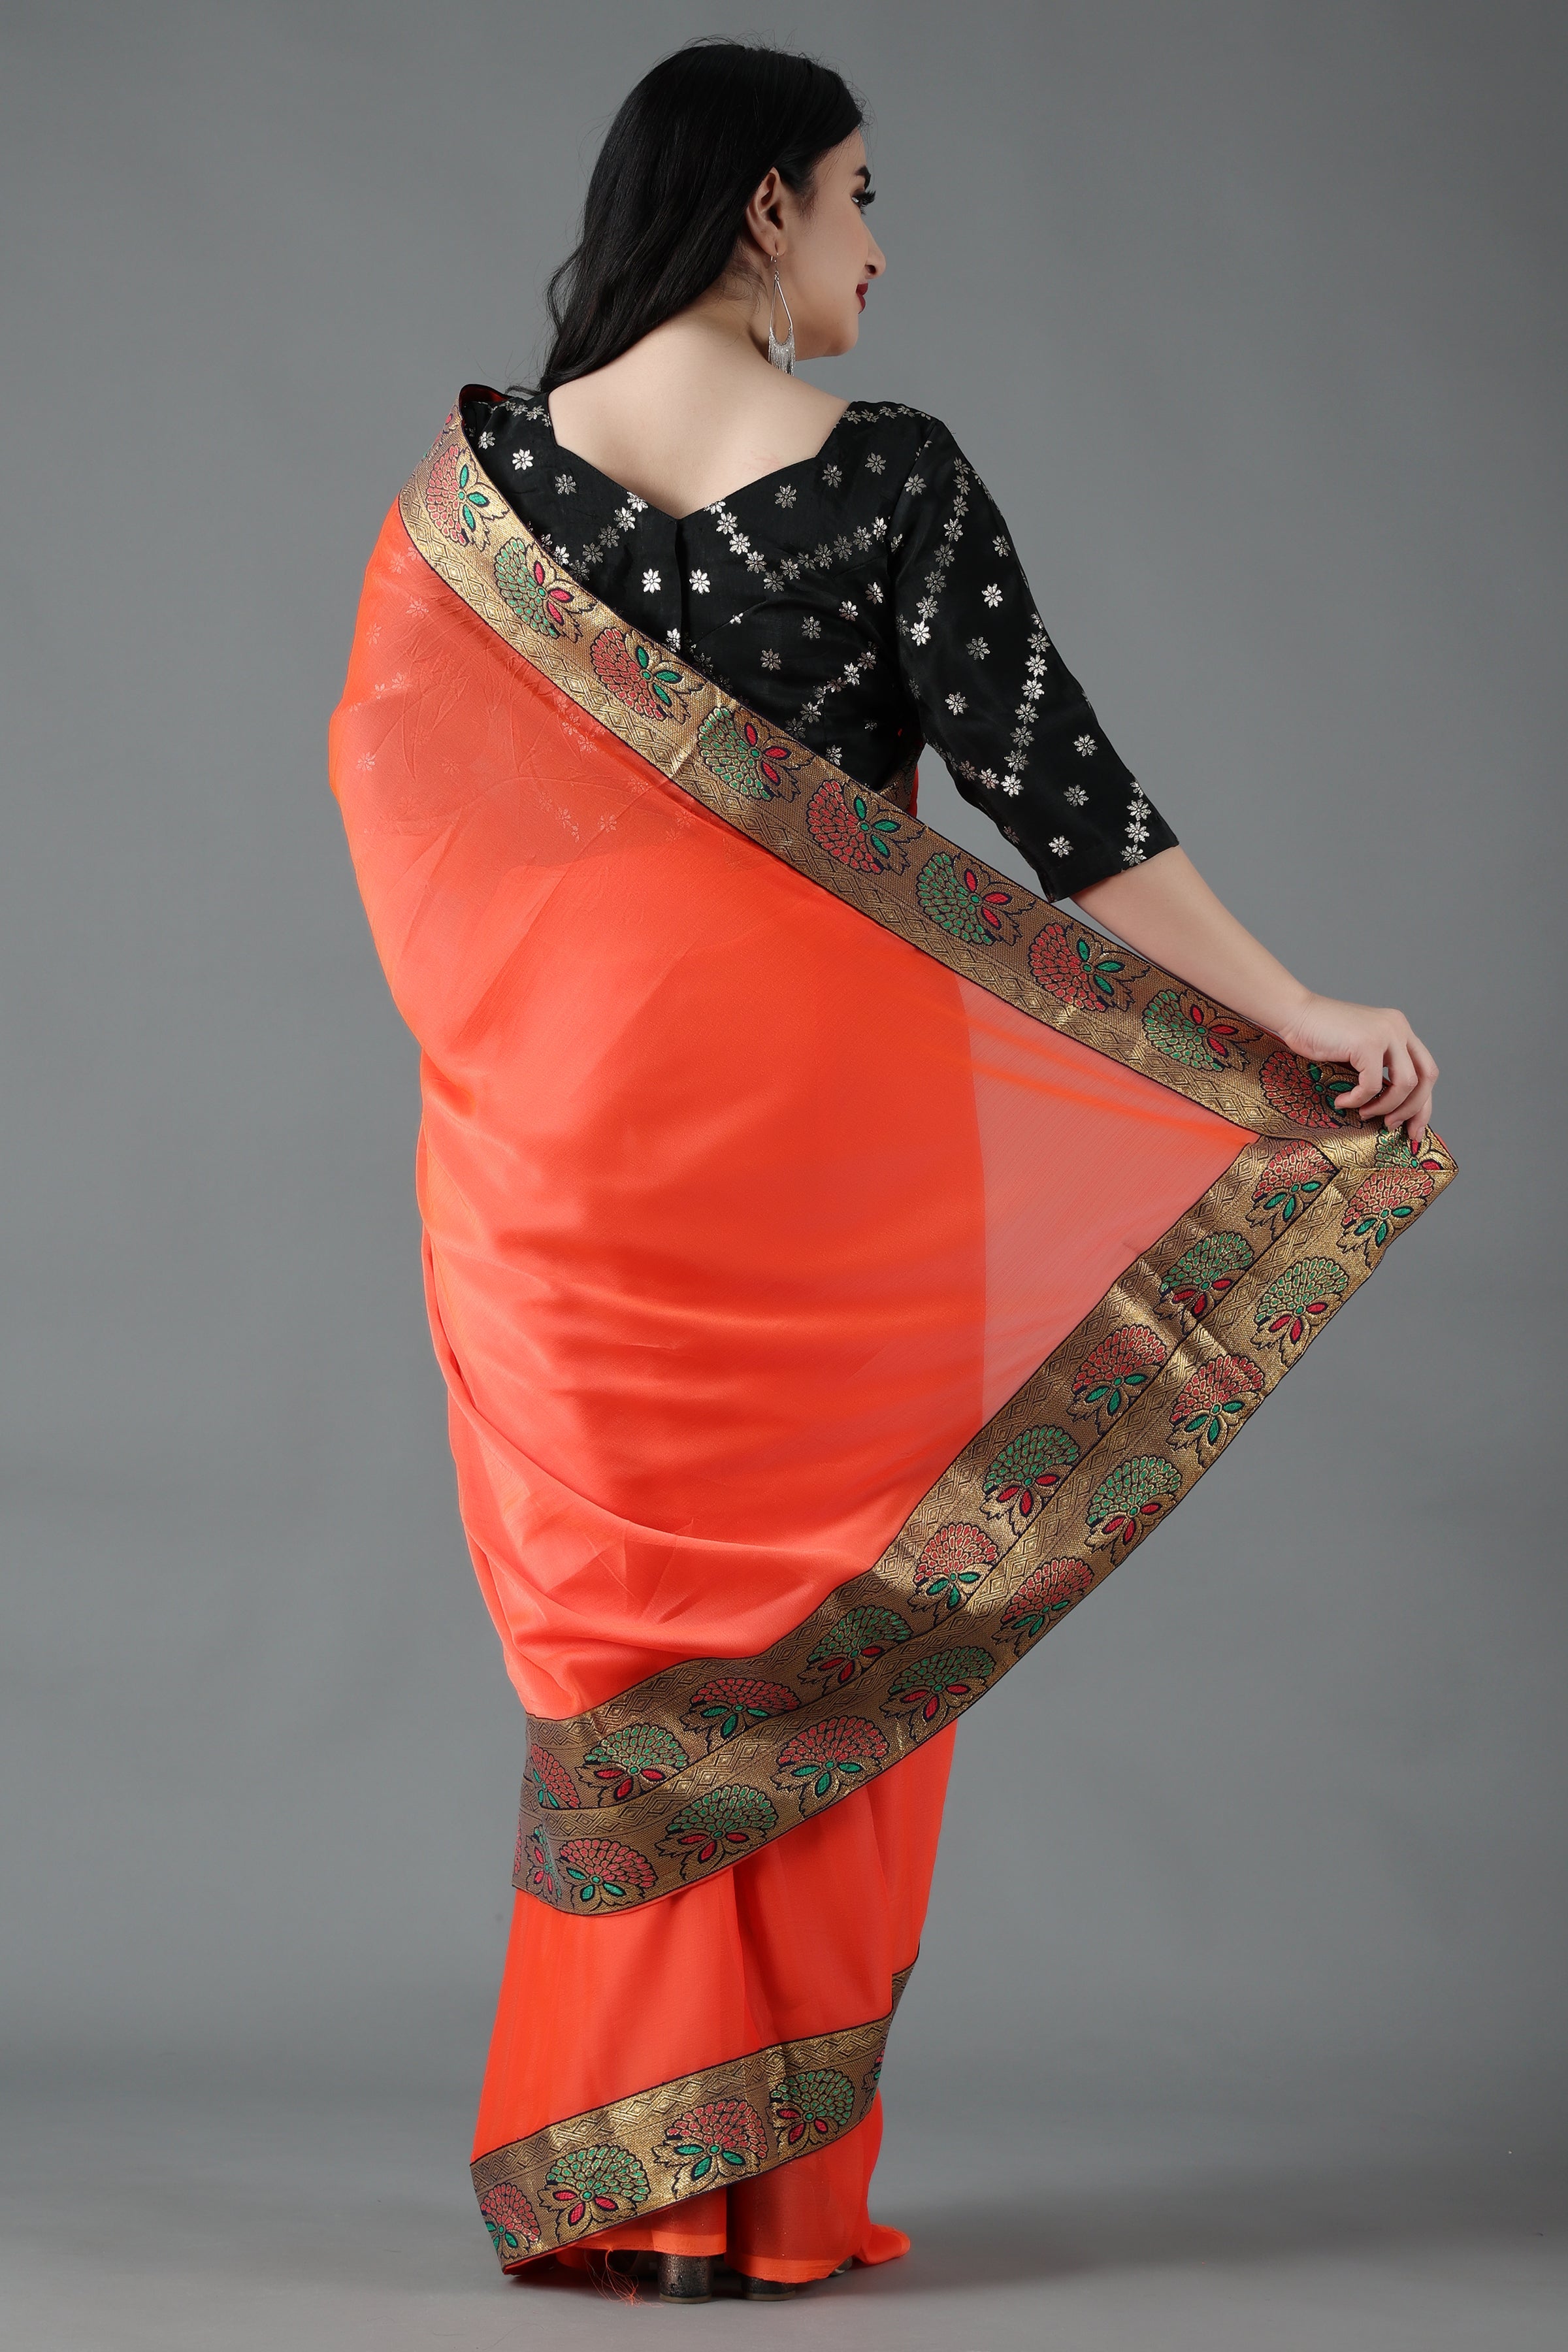 Beautiful Rich Pallu Black Colour Silk Saree With Blouse, Heavy Border Saree,  बॉर्डर साड़ी - Bhakti Silk Mills, Surat | ID: 2850502533073